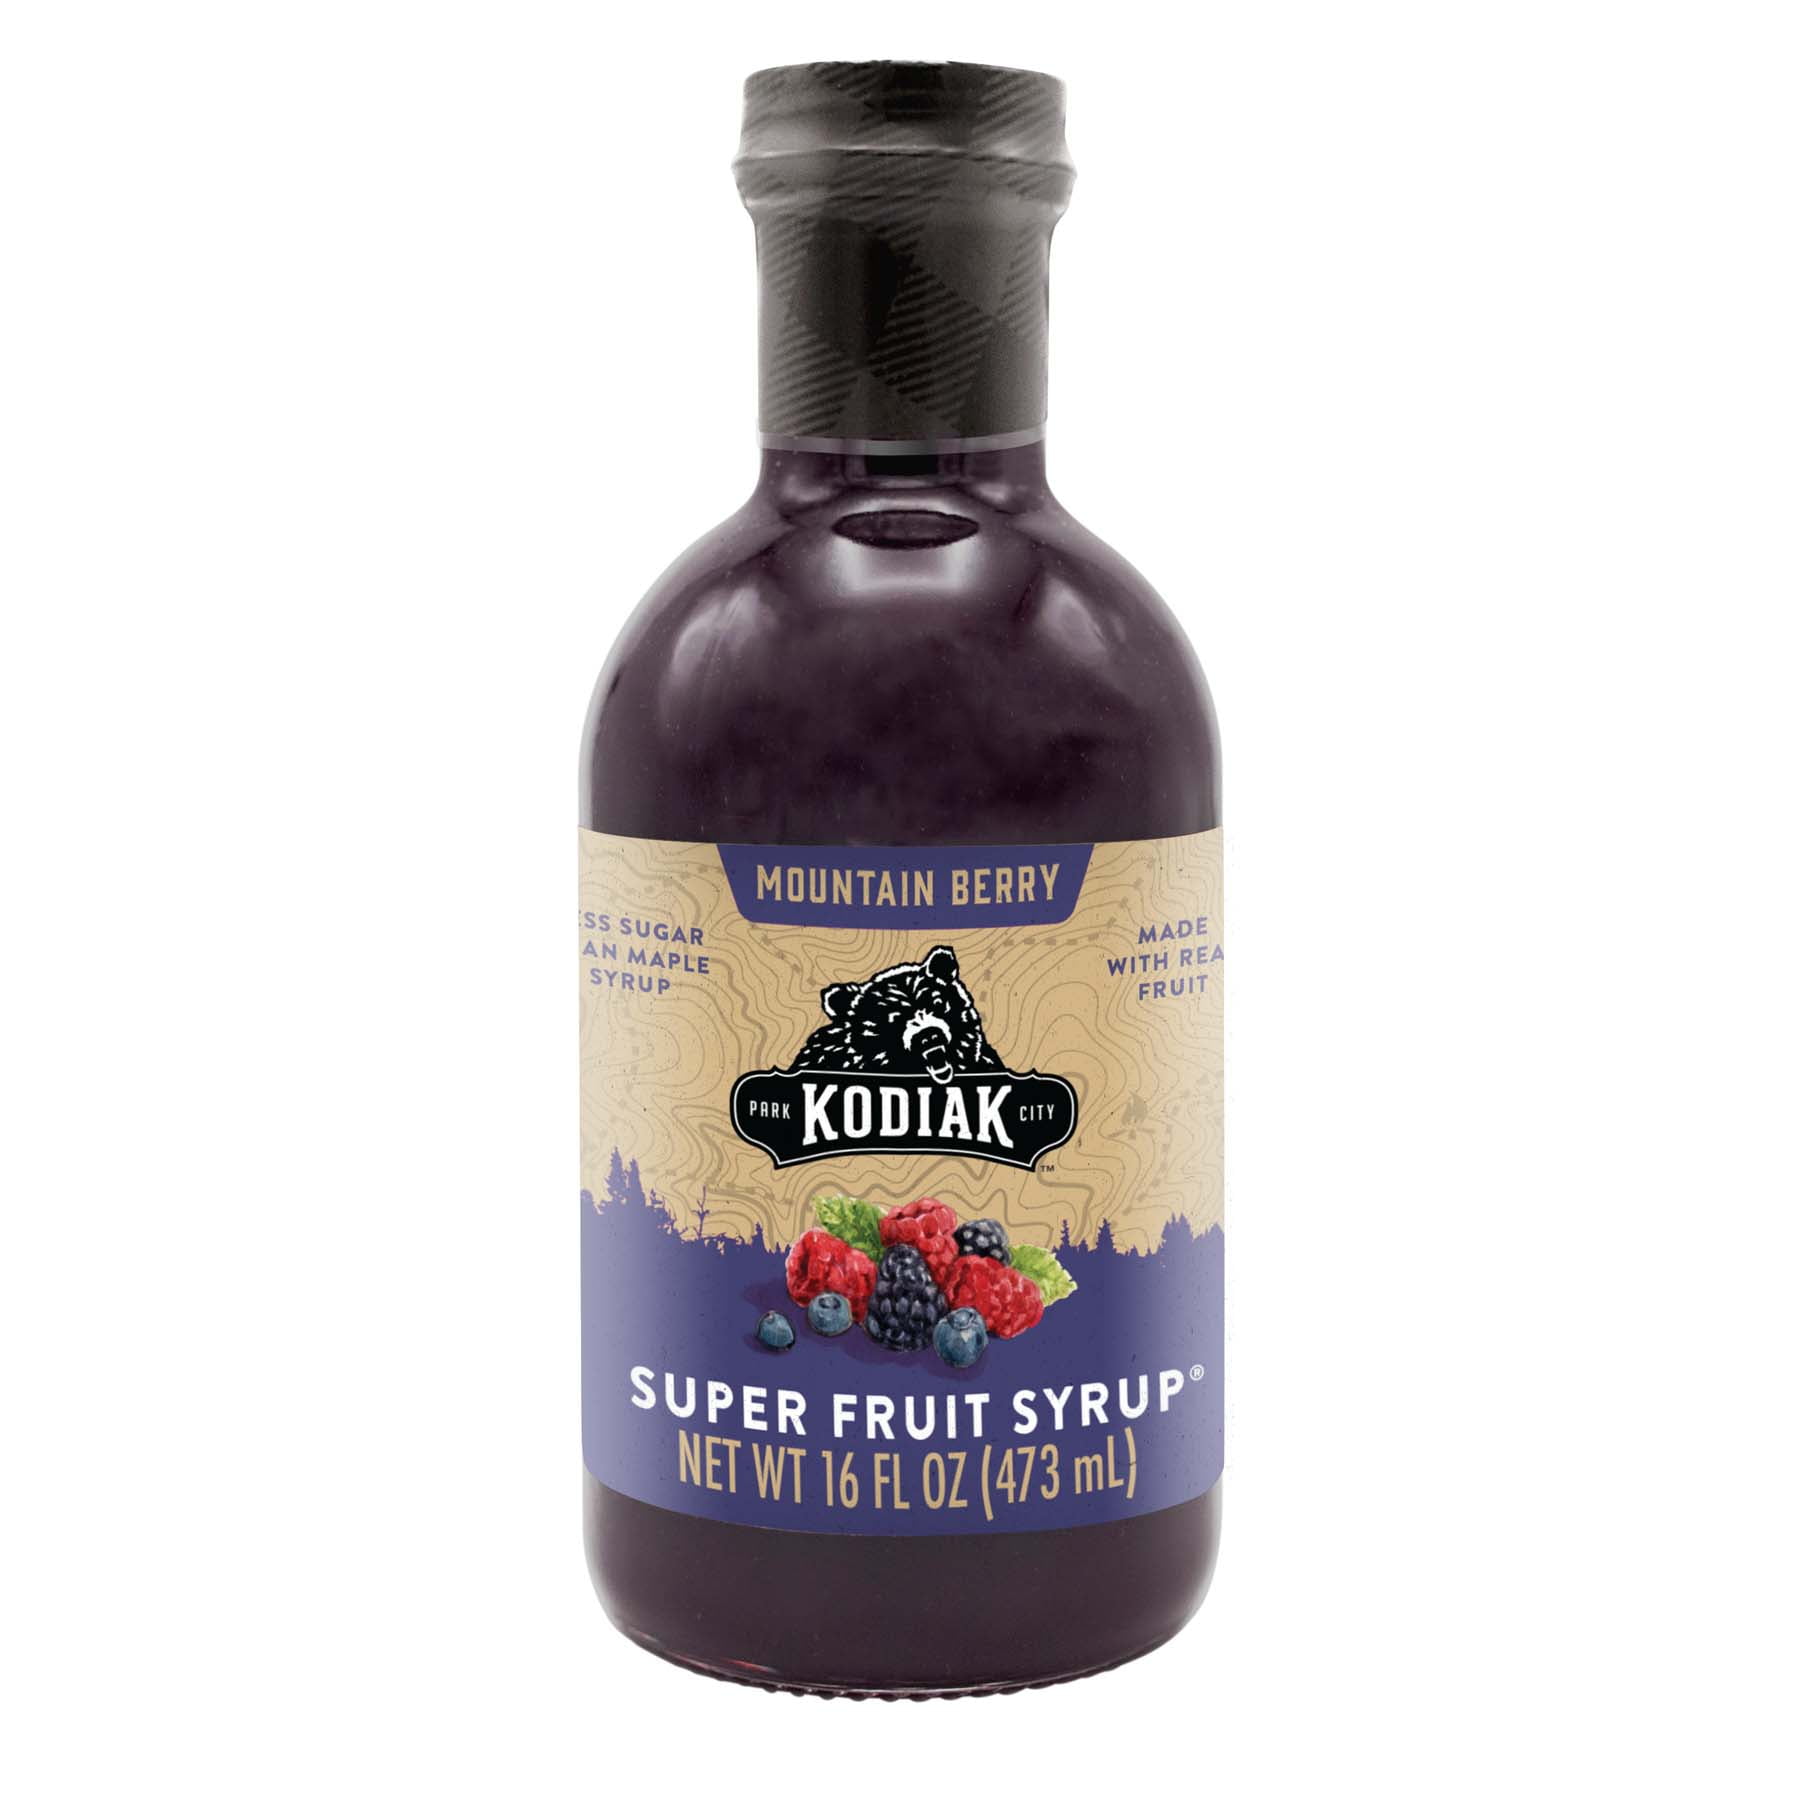 Kodiak Mountain Berry Super Fruit Syrup, 16 fl oz